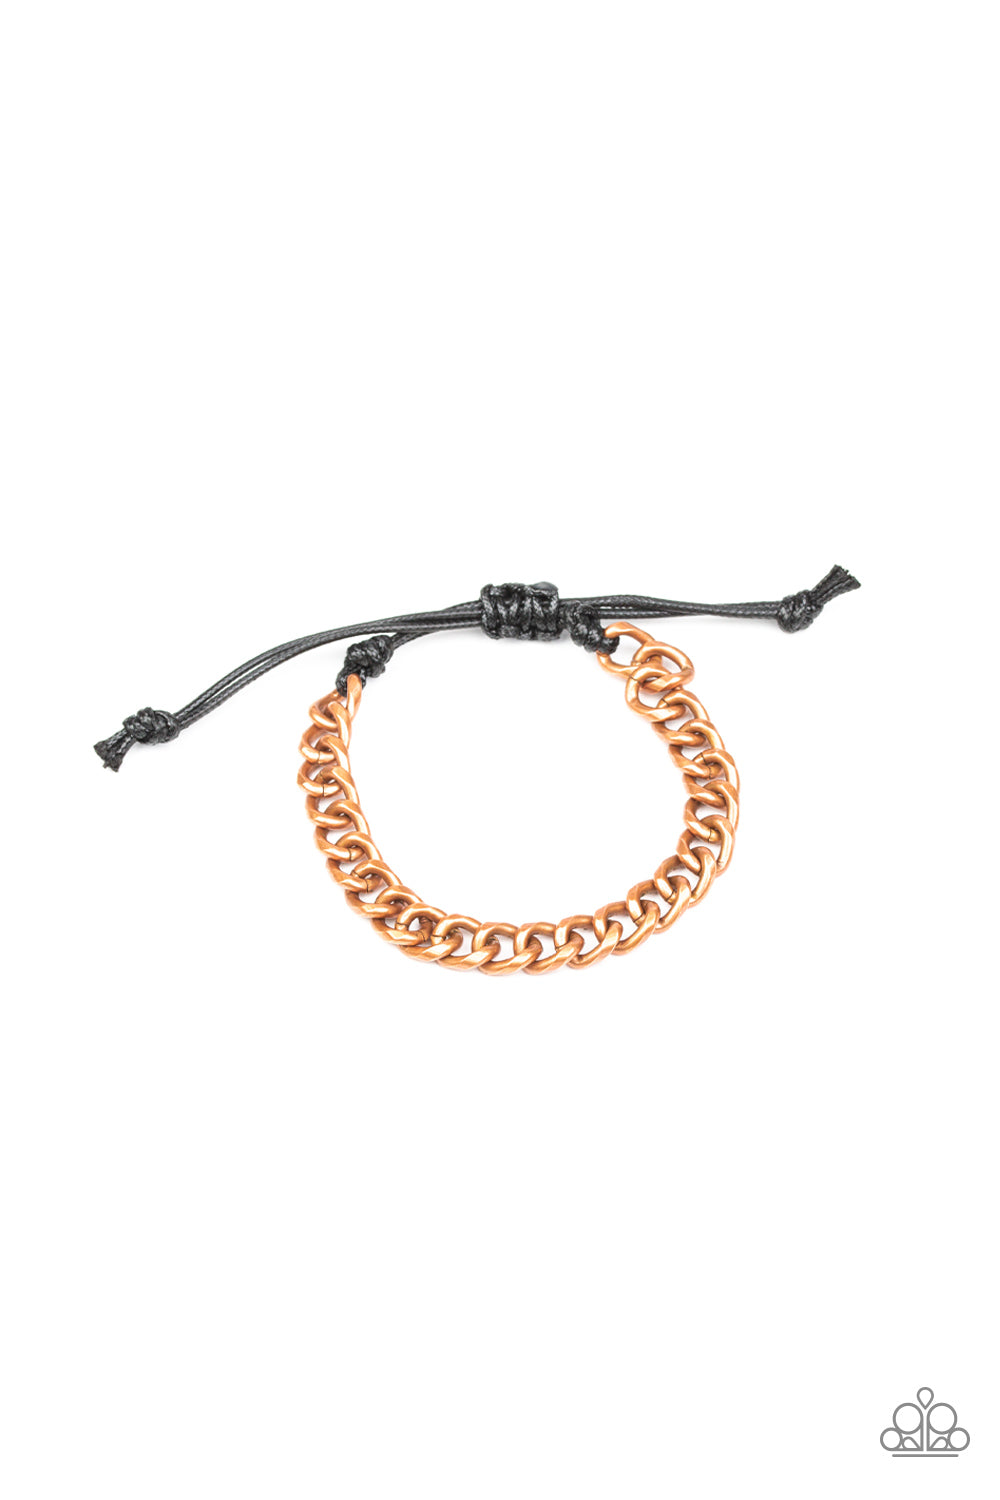 Blitz - copper - Paparazzi mens bracelet